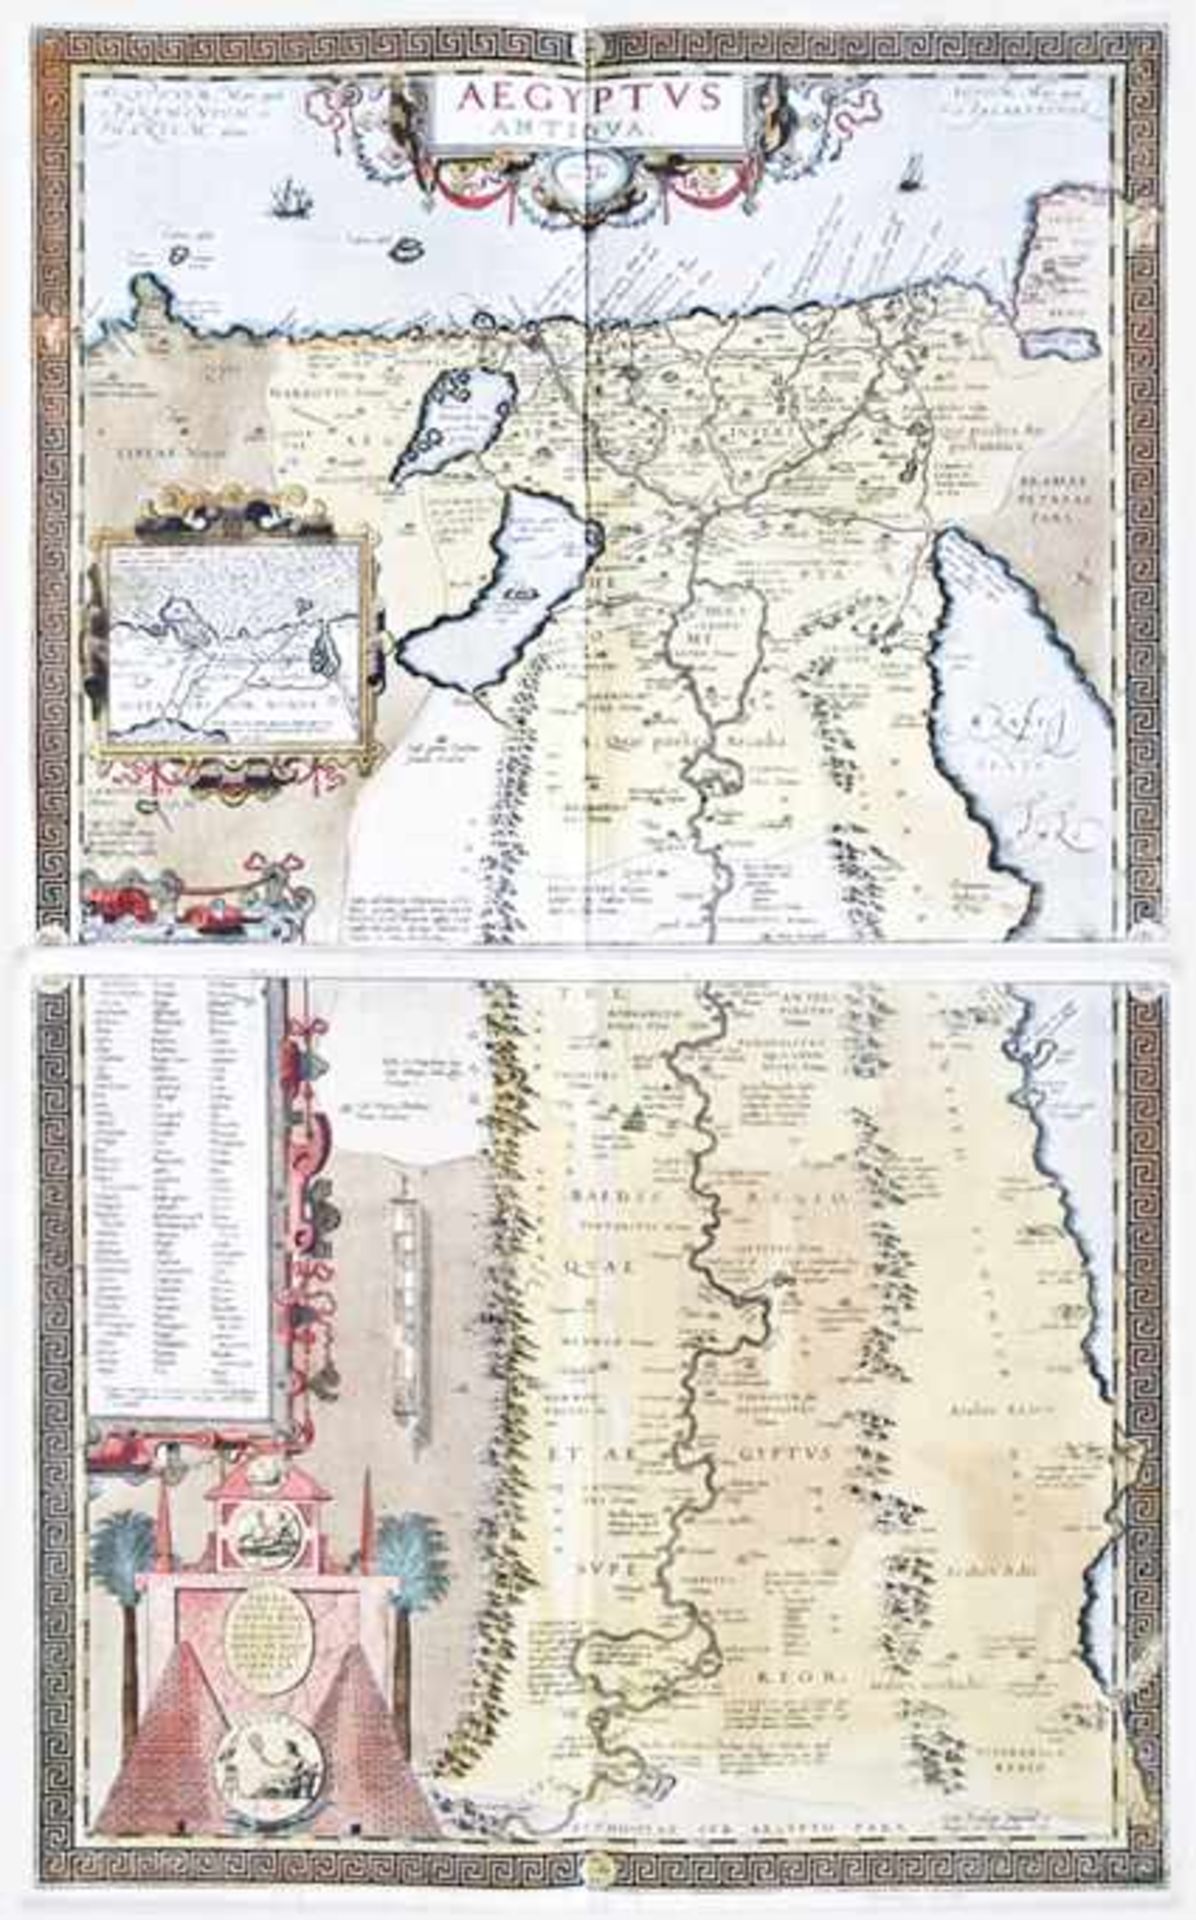 Afrika.- Aegyptus Antiqua. 2 altkolor. Kupferstichkarten bei A. Ortelius. Antwerpen, 1584.